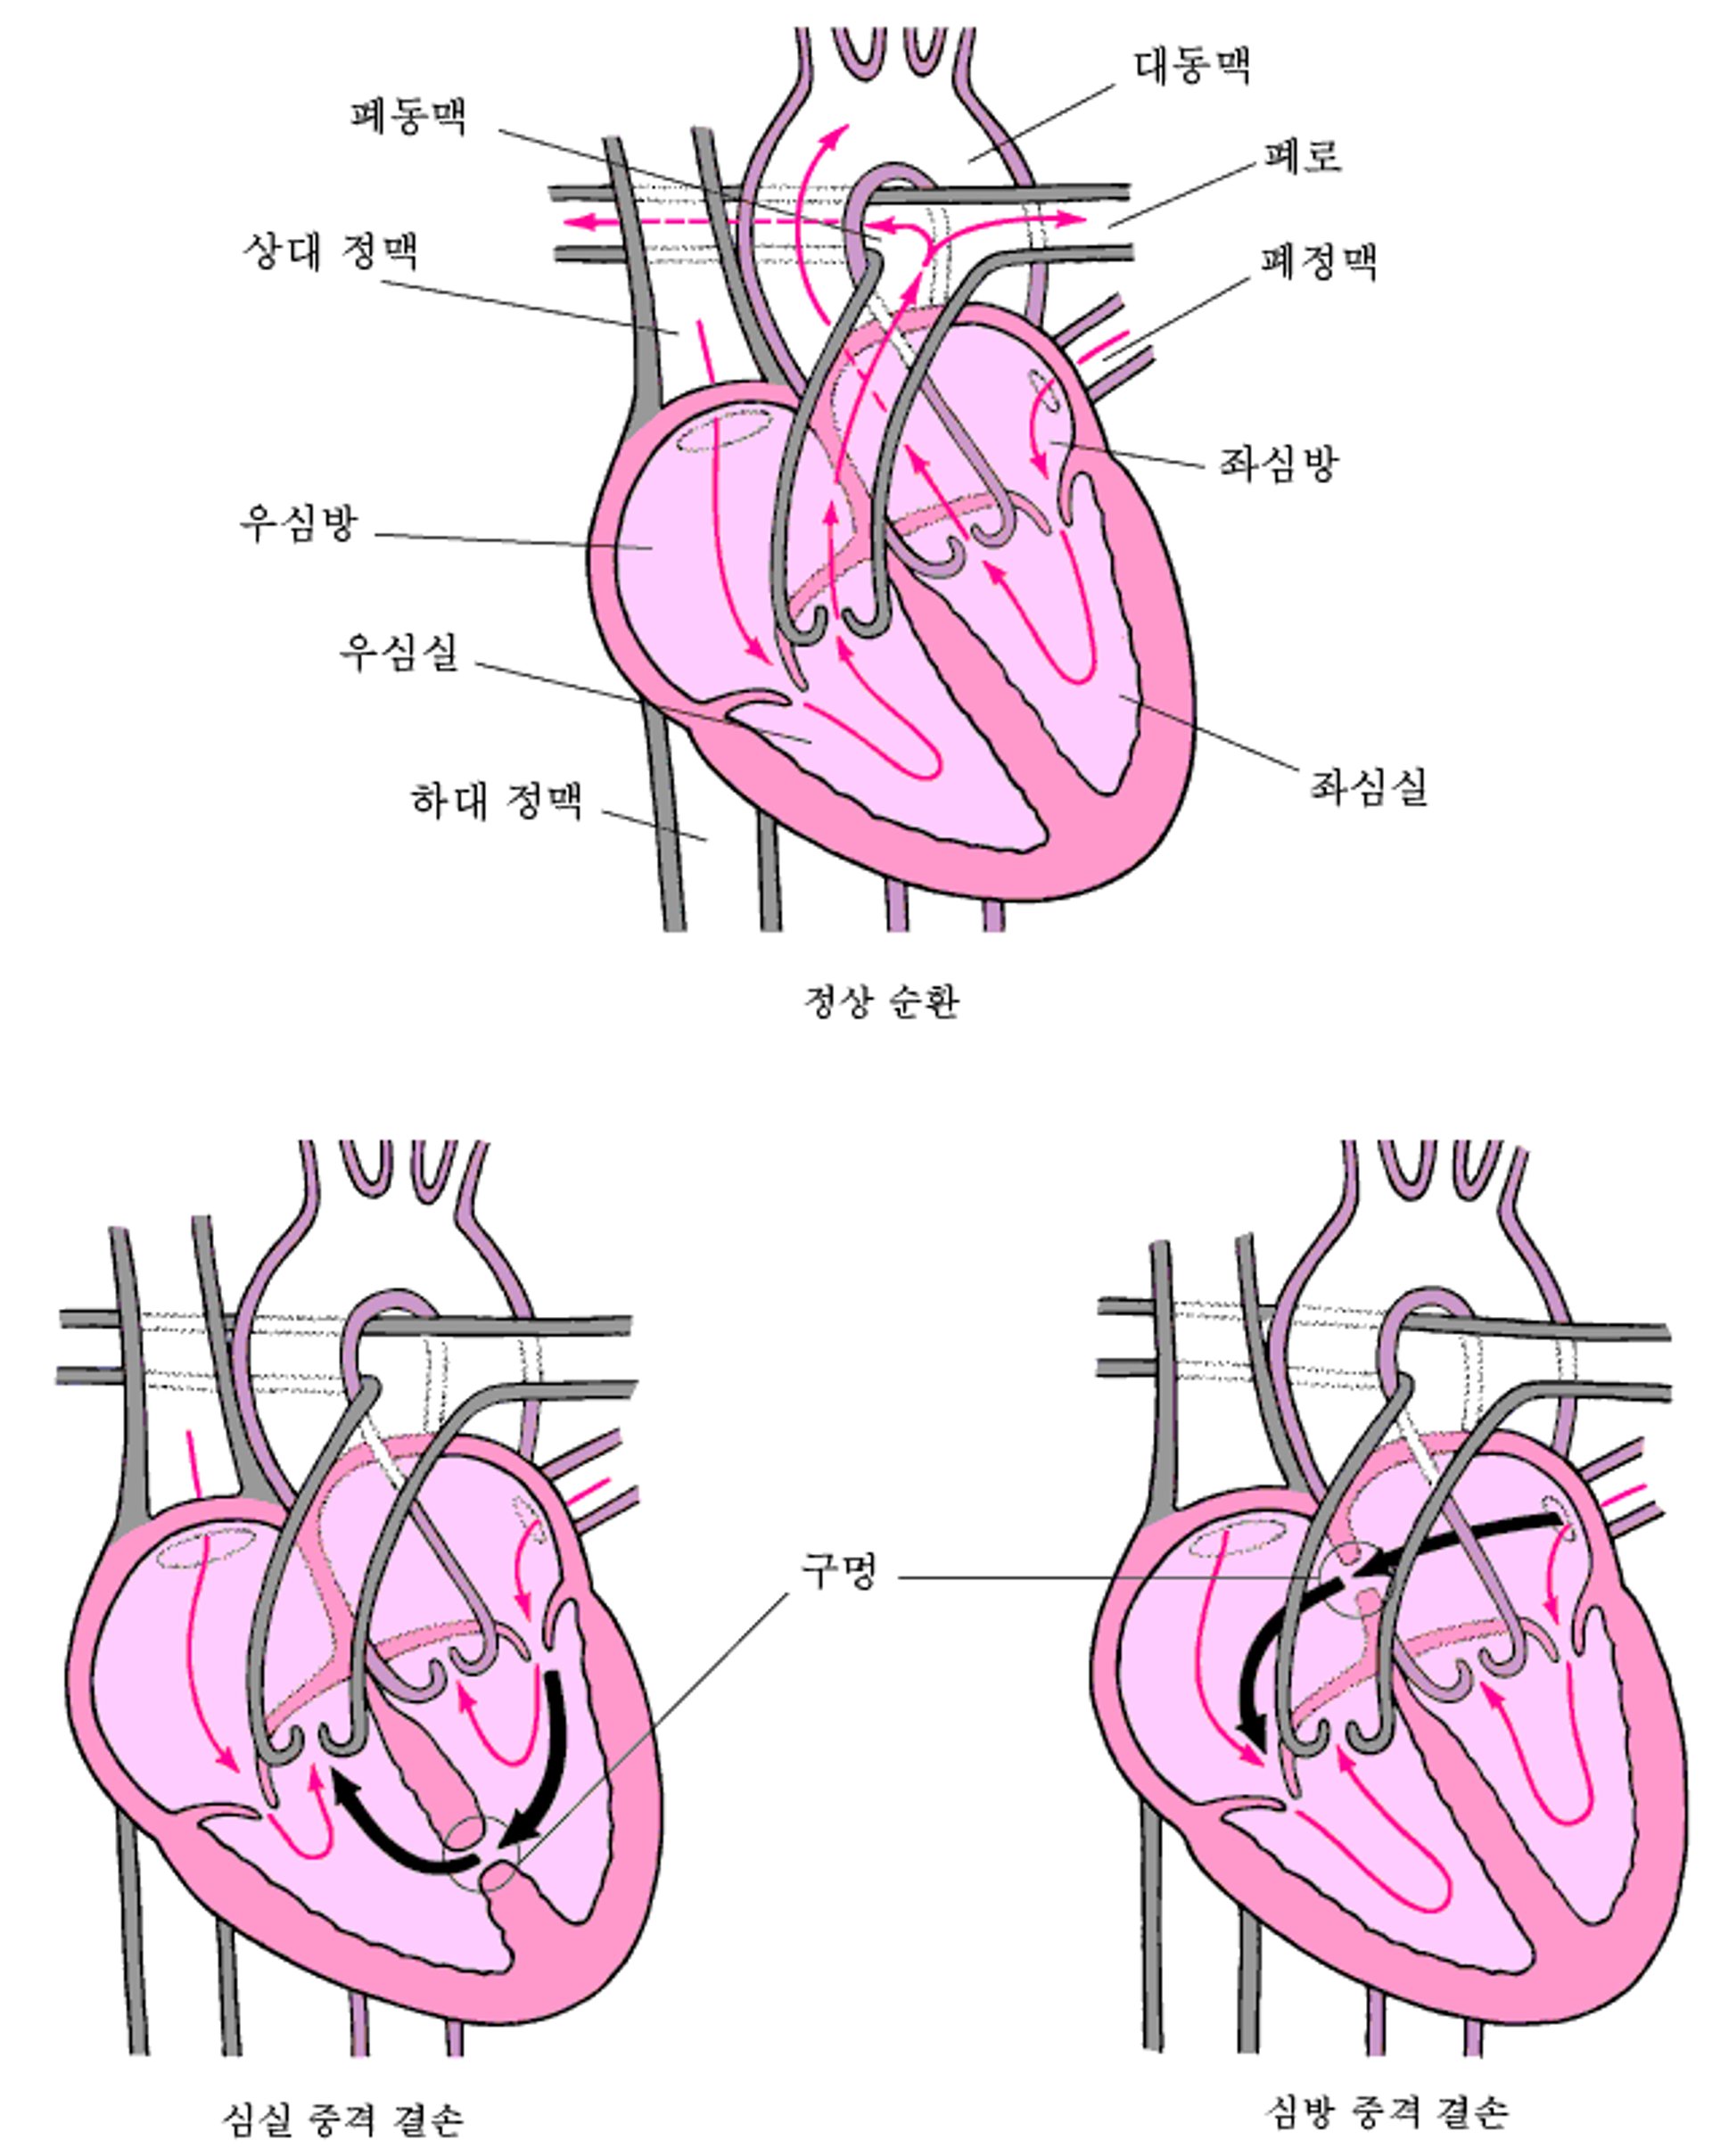 중격 결손: 심장의 벽에 있는 구멍